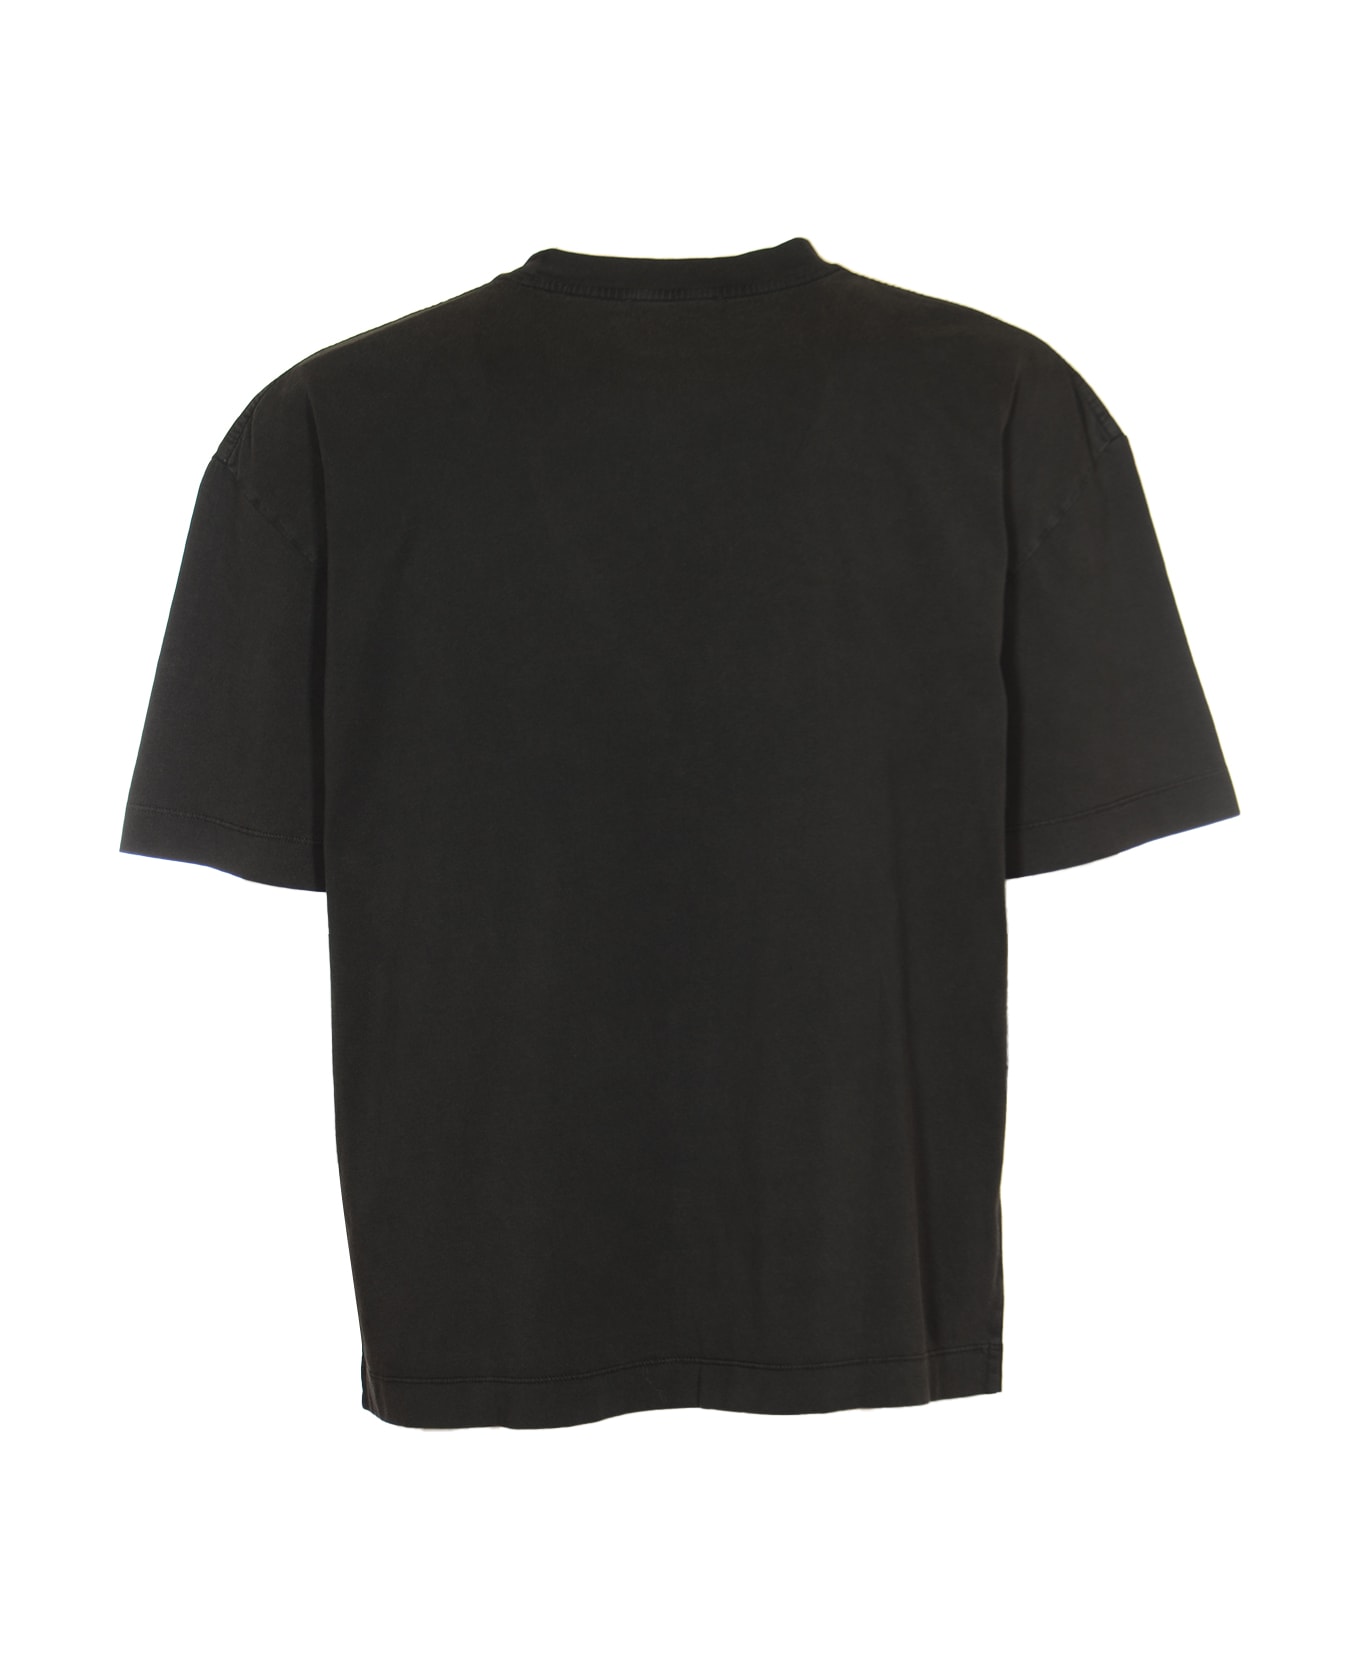 Études Spirit Centre T-shirt - Black